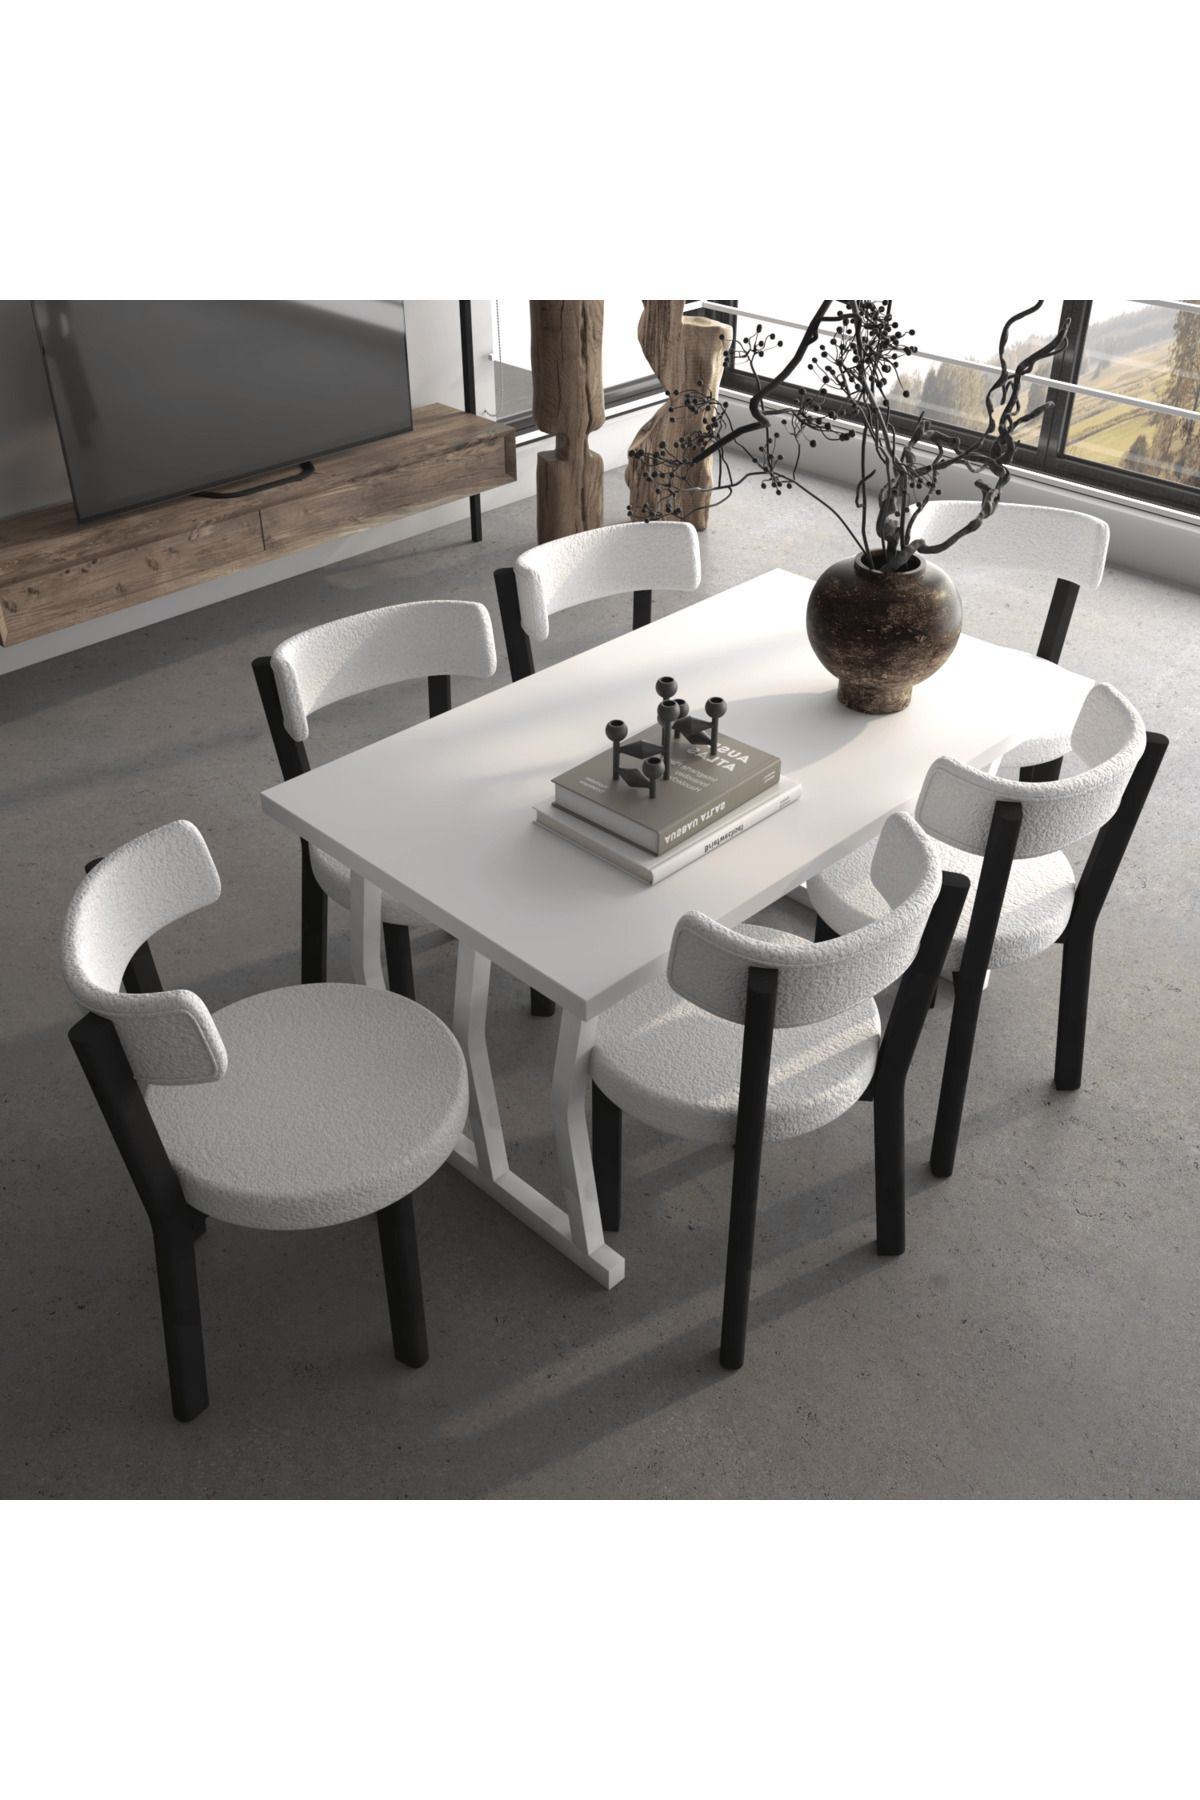 Modev Star Masa Sandalye 80x140 Yemek Masası Mutfak Masası 6 Kişilik Masa Sandalye Takımı